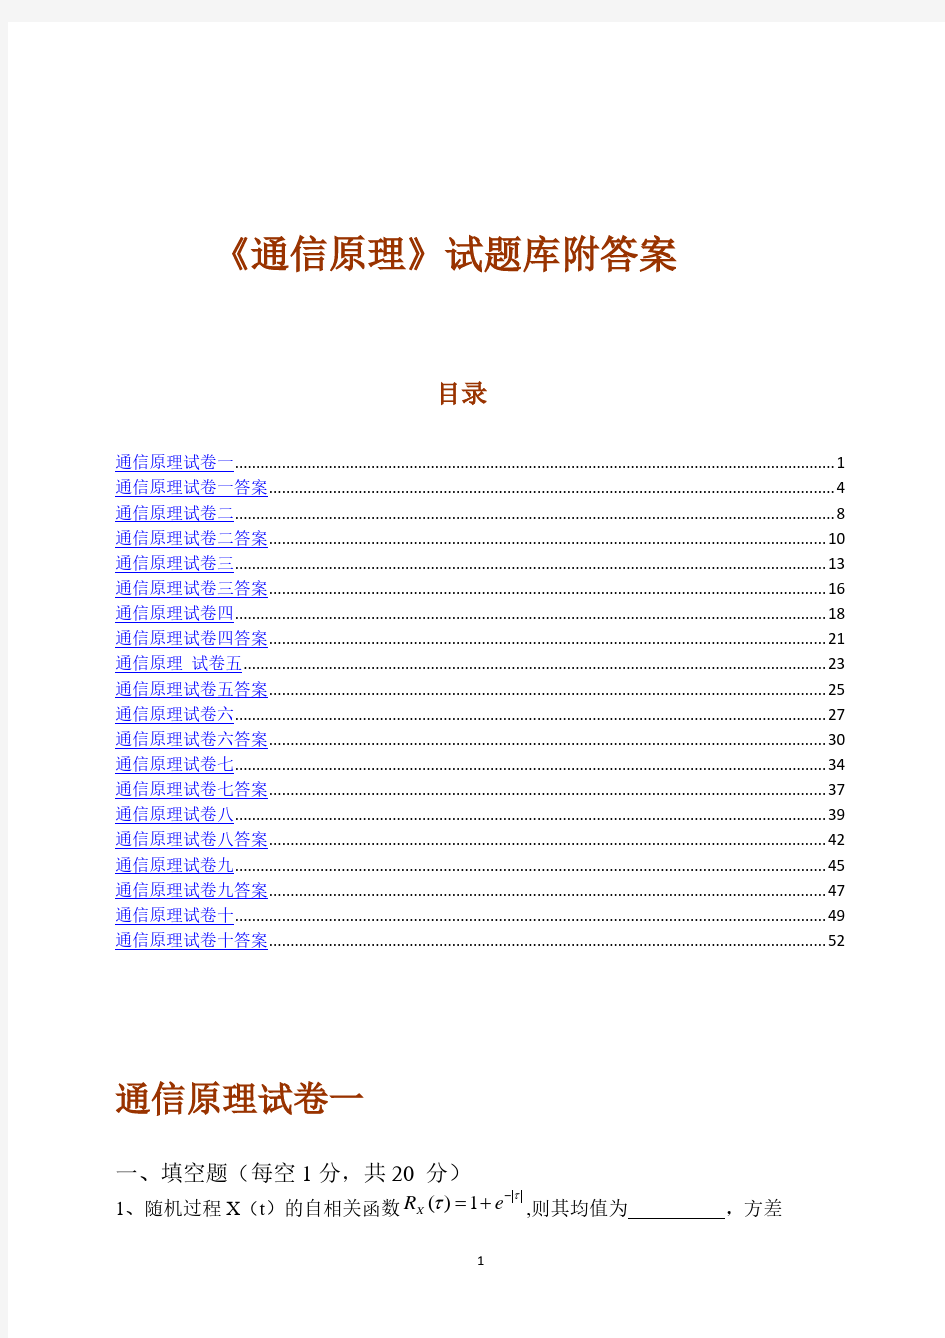 《通信原理》试题库附答案(10套)(重庆邮电大学).pdf